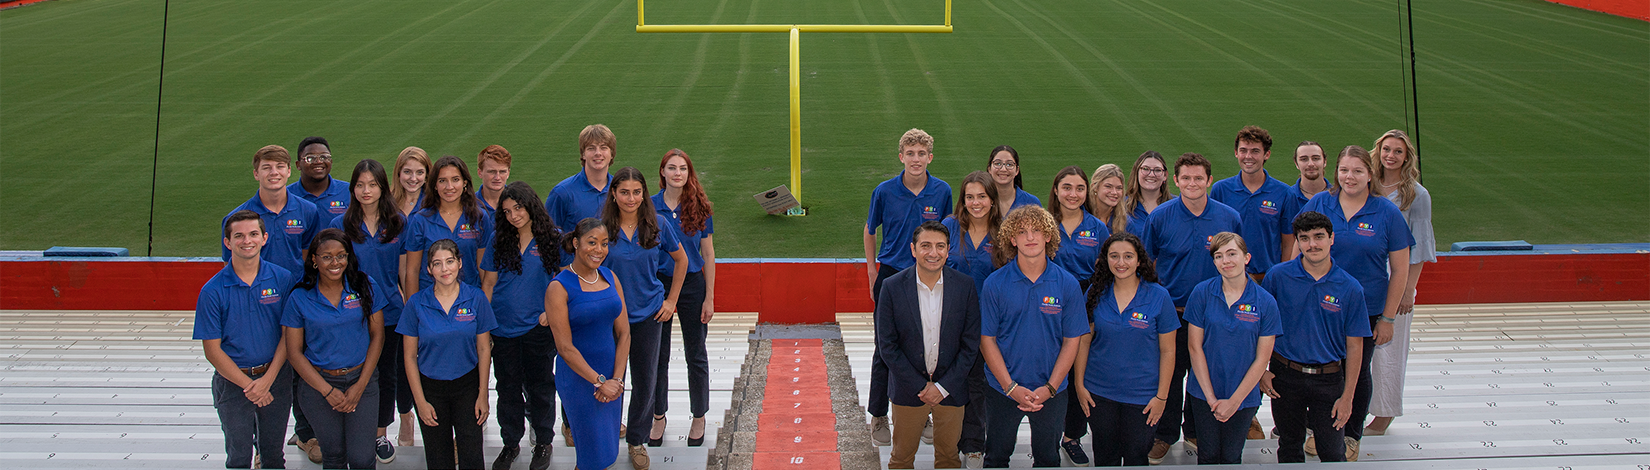 佛罗里达青年学院参与者在本希尔·格里芬体育场（Ben Hill Griffin Stadium）拍摄照片，并在背景中瞄准。